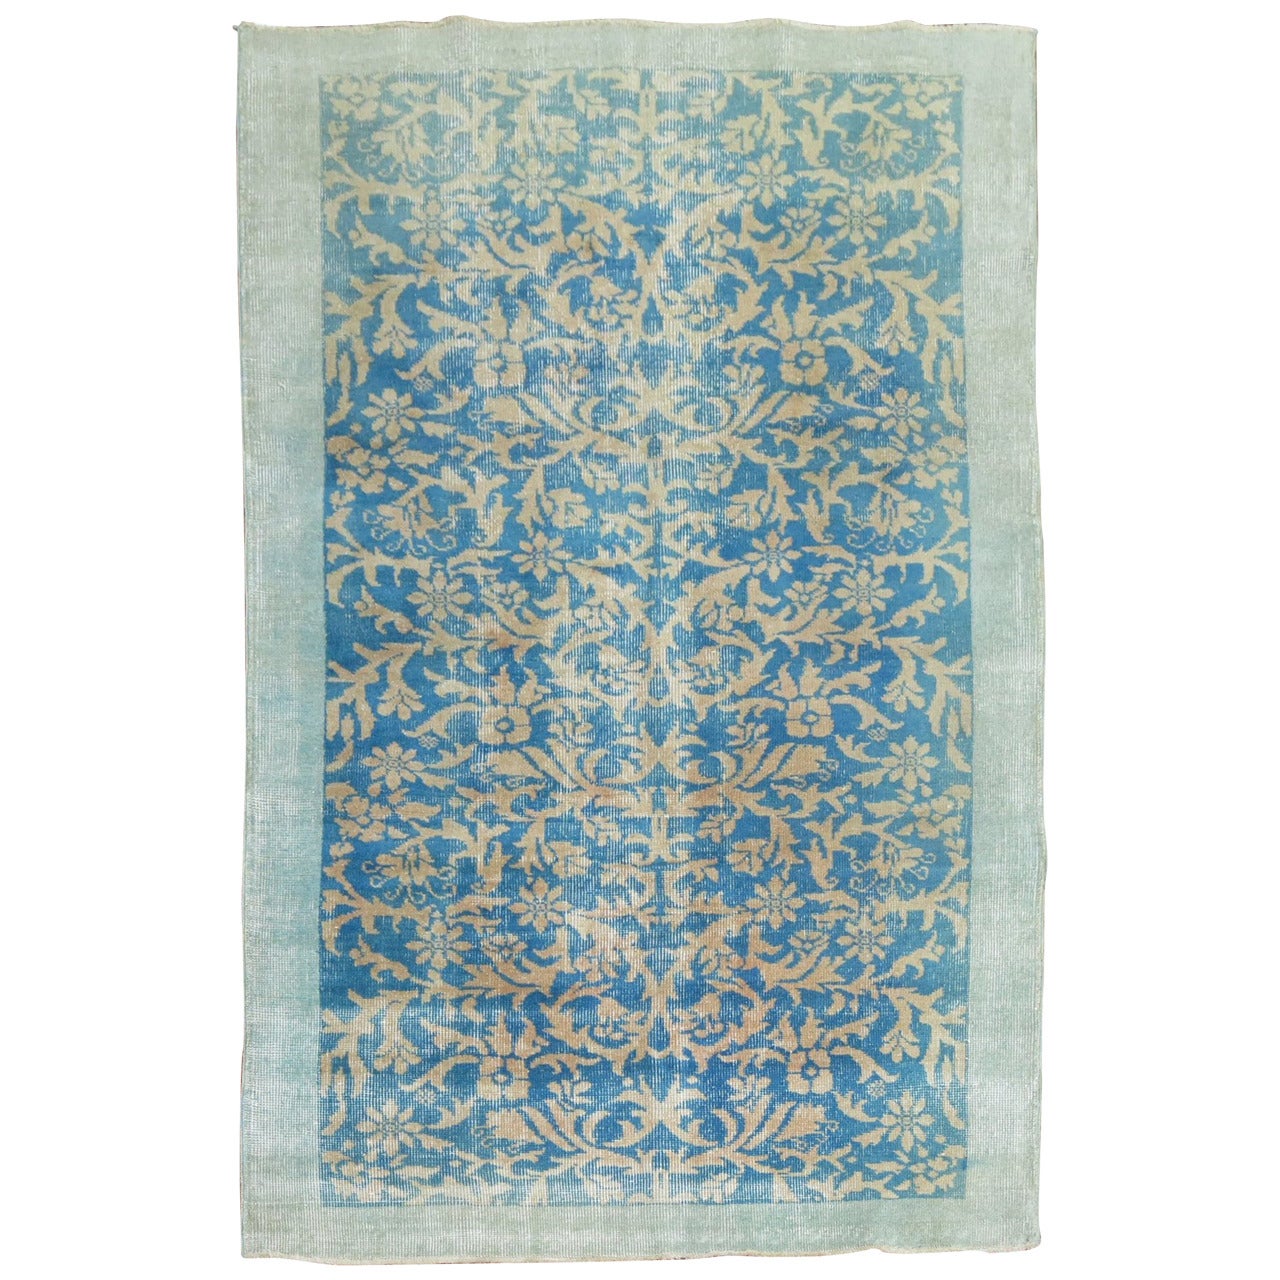 Türkischer Vintage-Teppich in Türkis